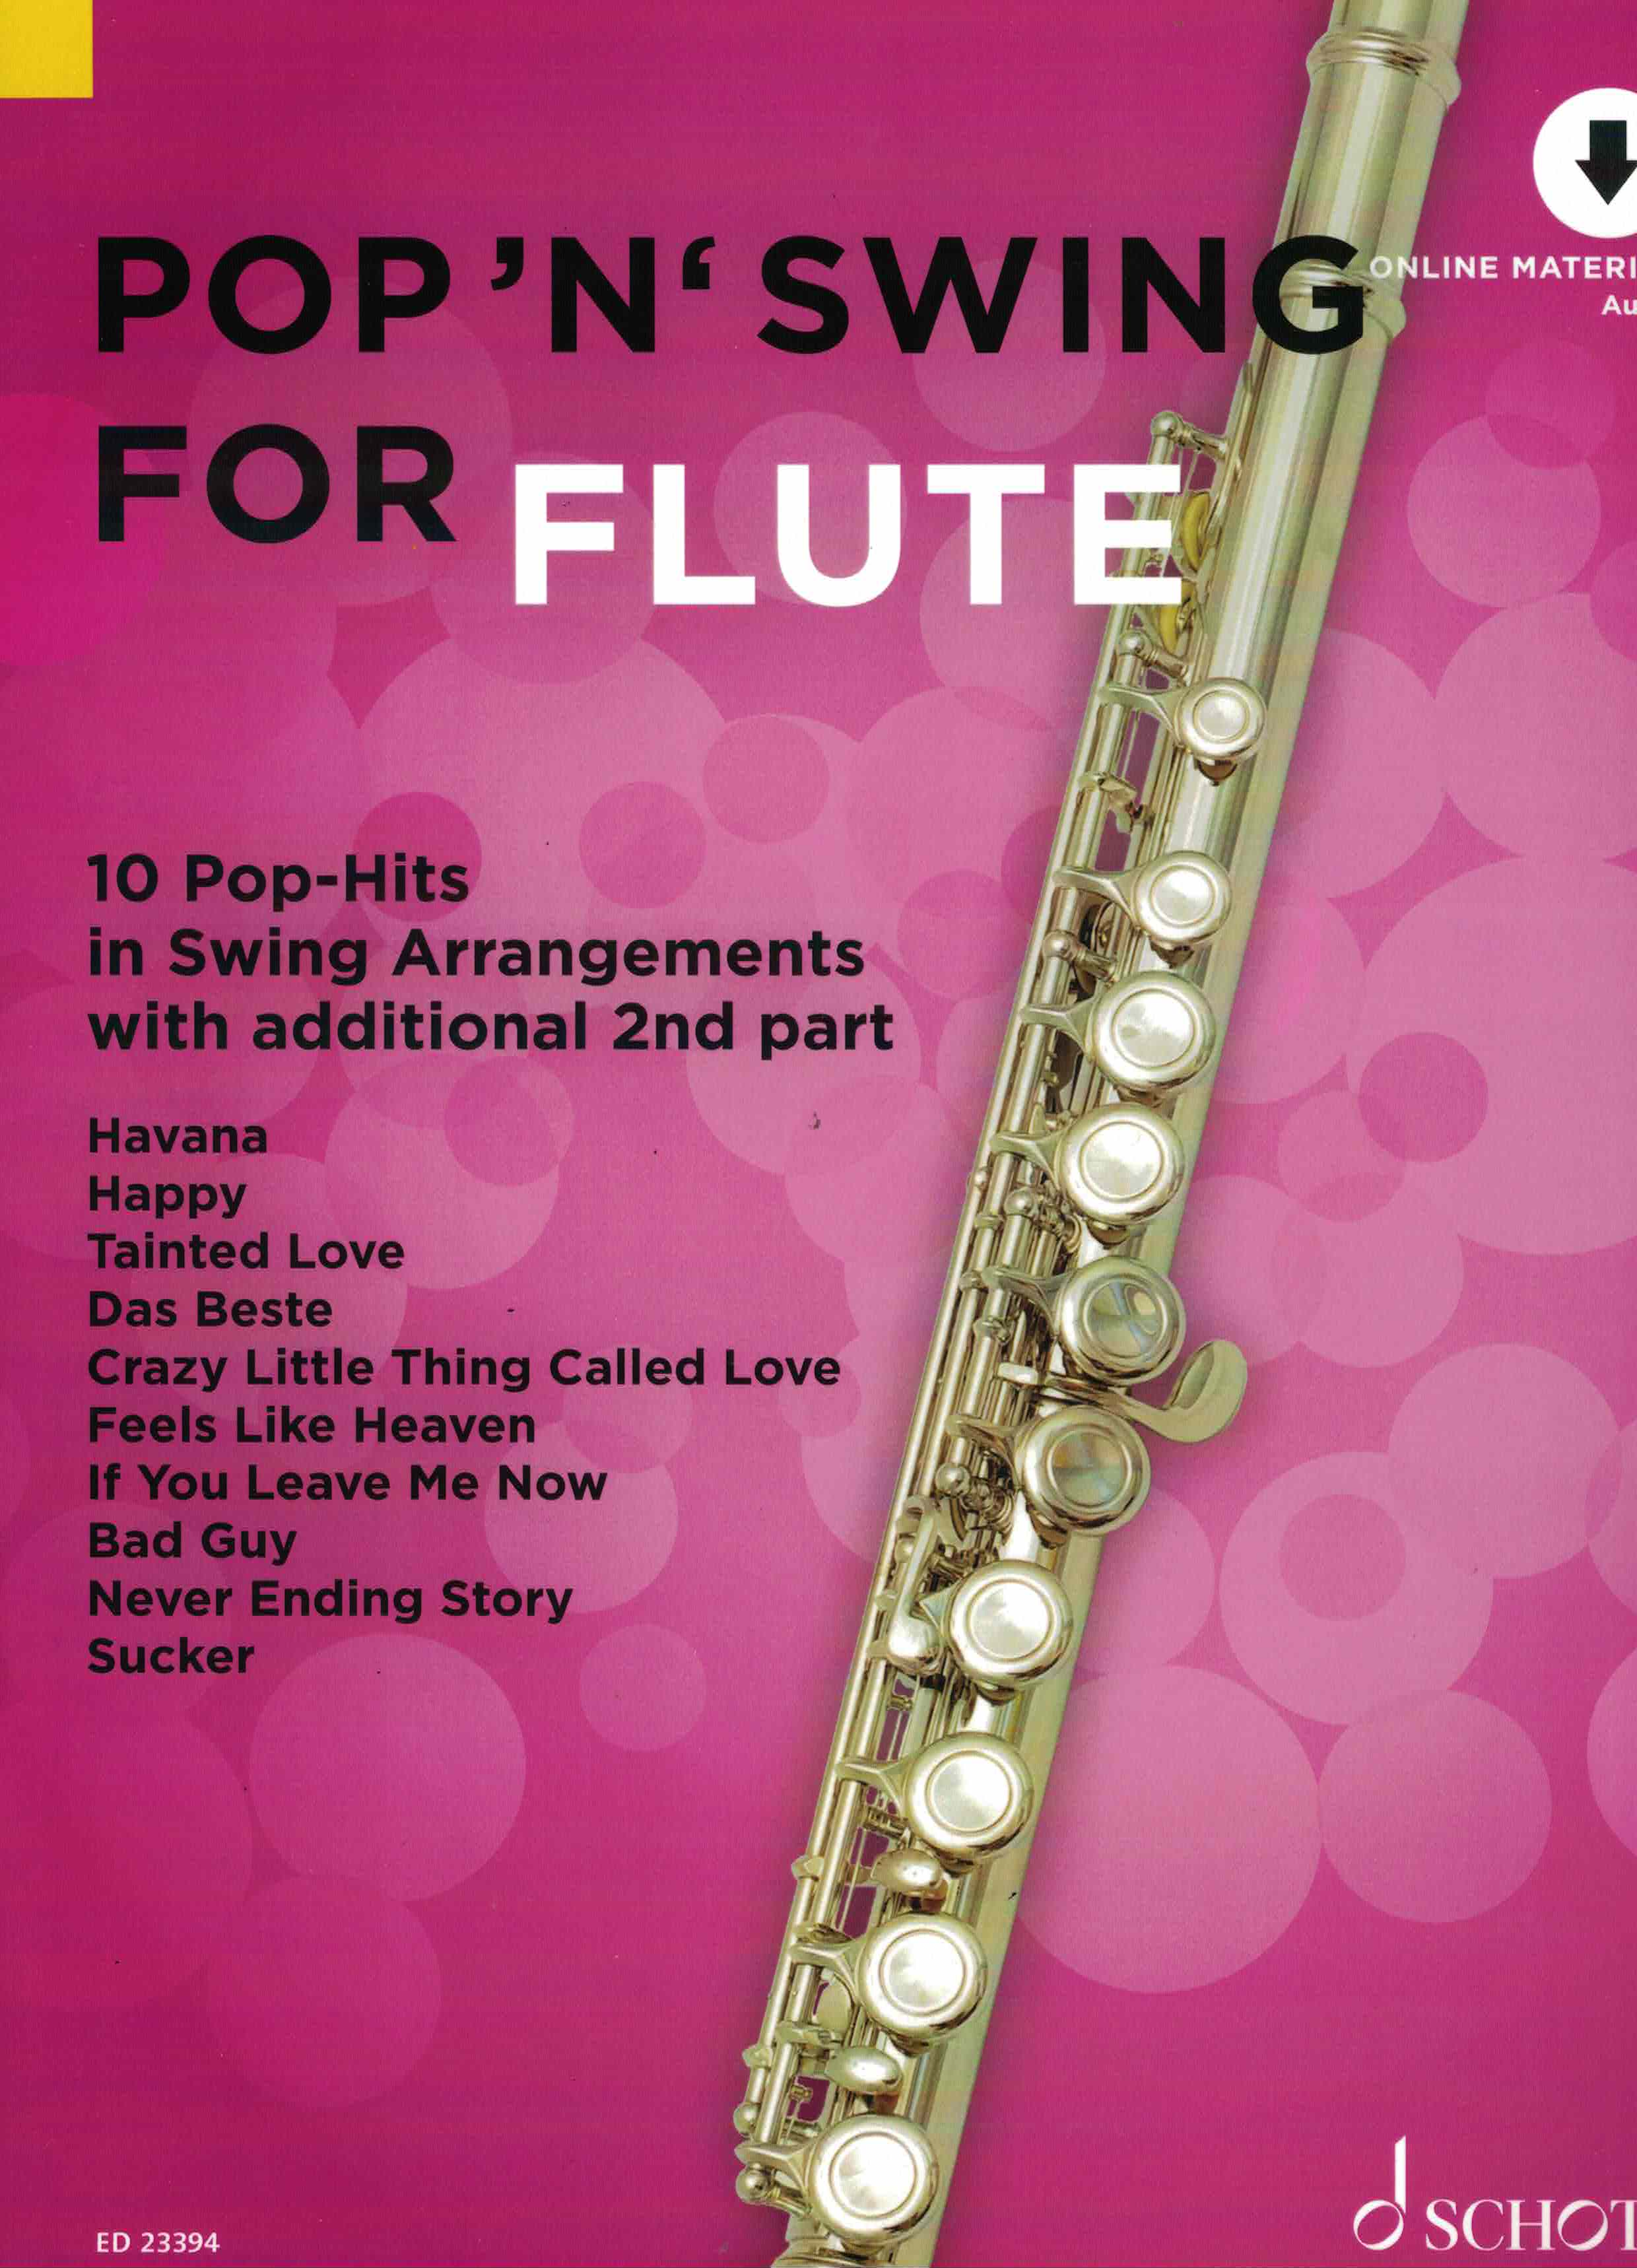 Pop n Swing for Flute, online material